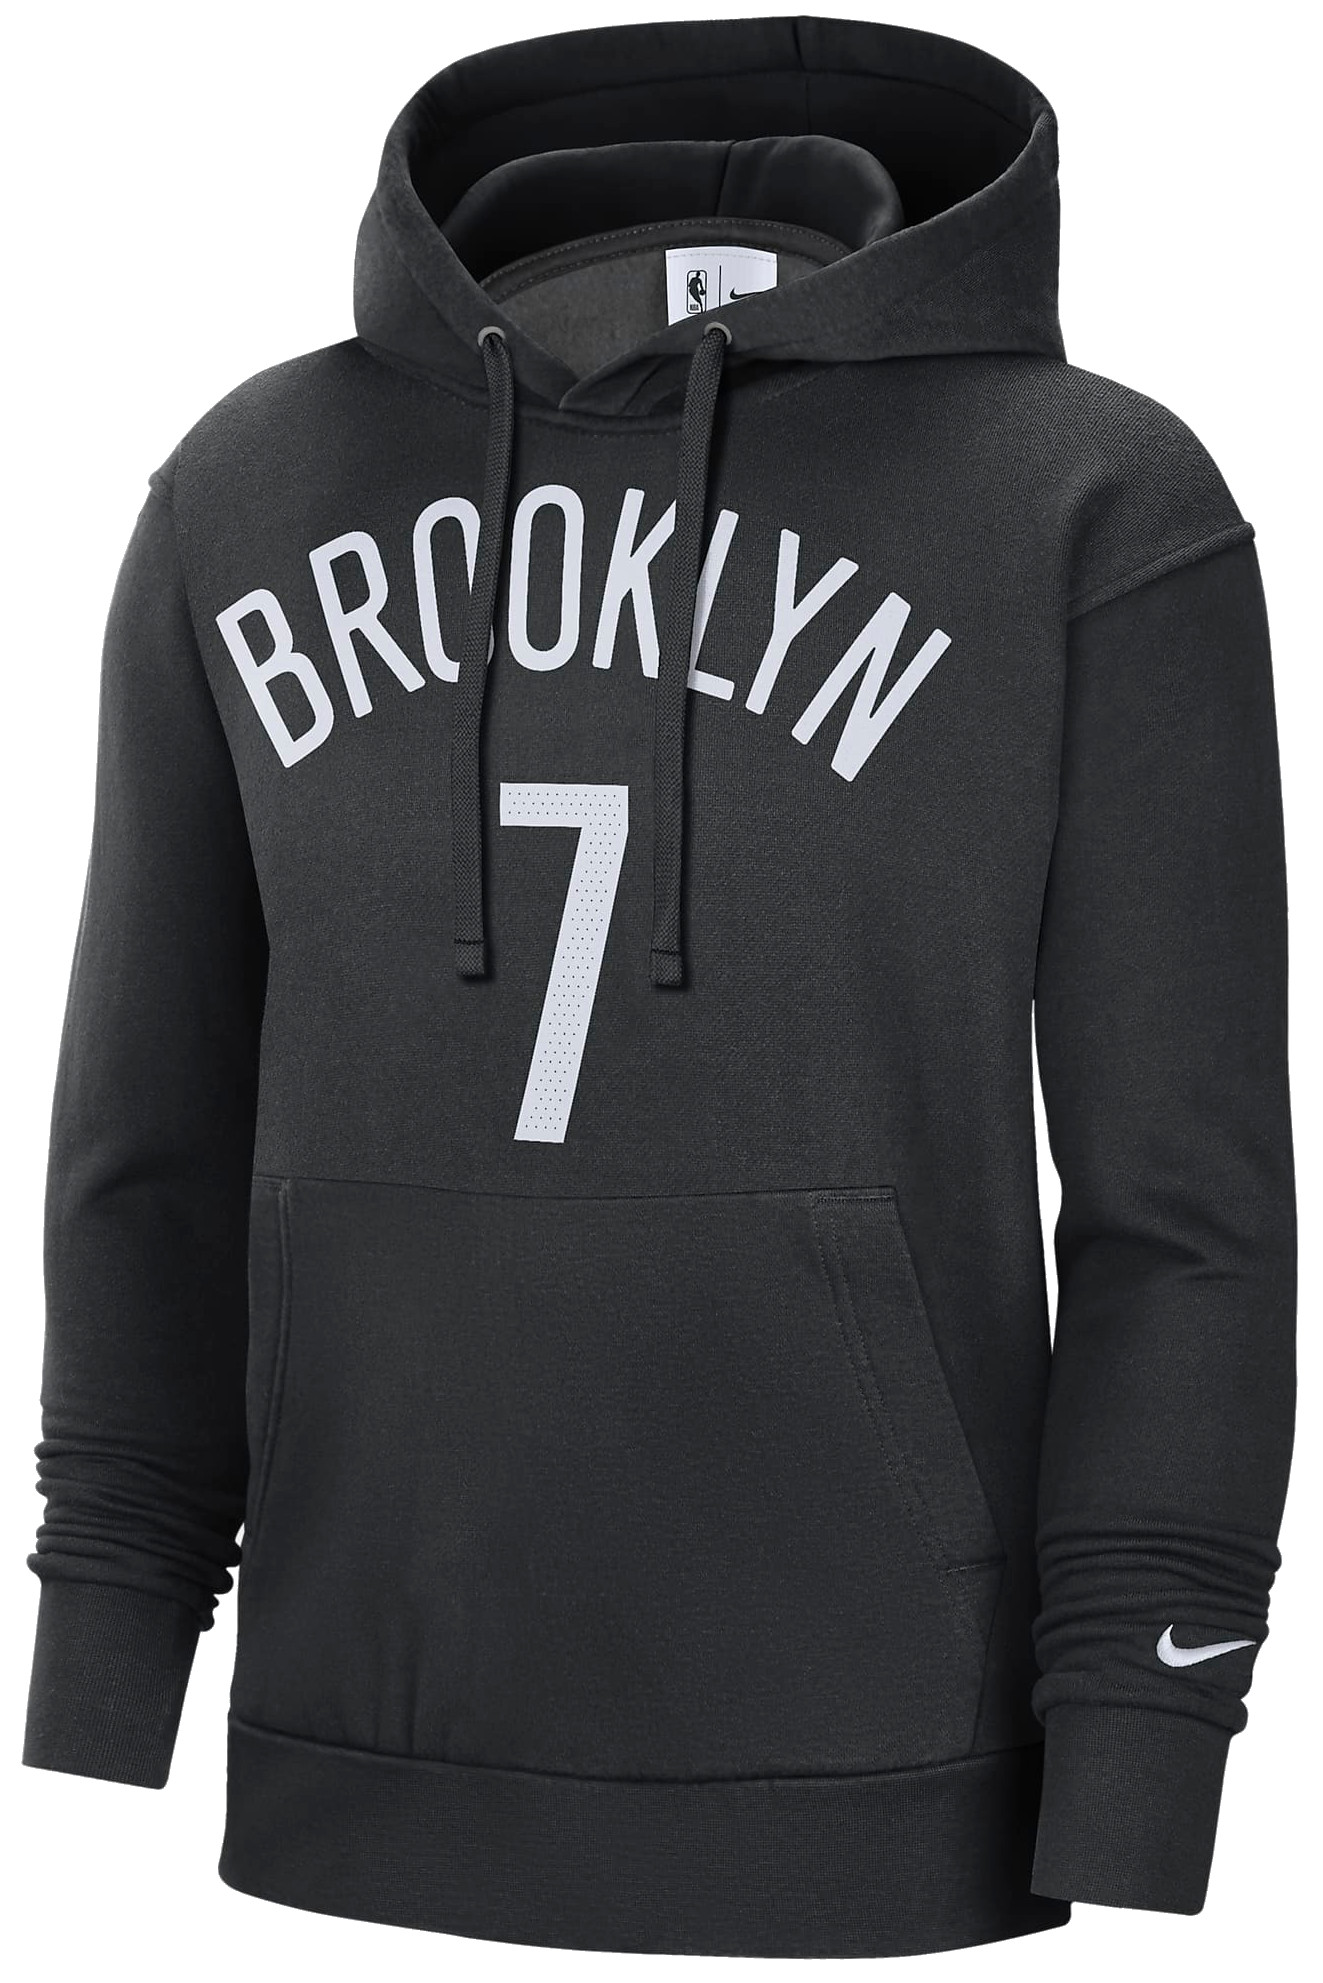 Φούτερ-Jacket Nike NBA Brooklyn Nets Essential